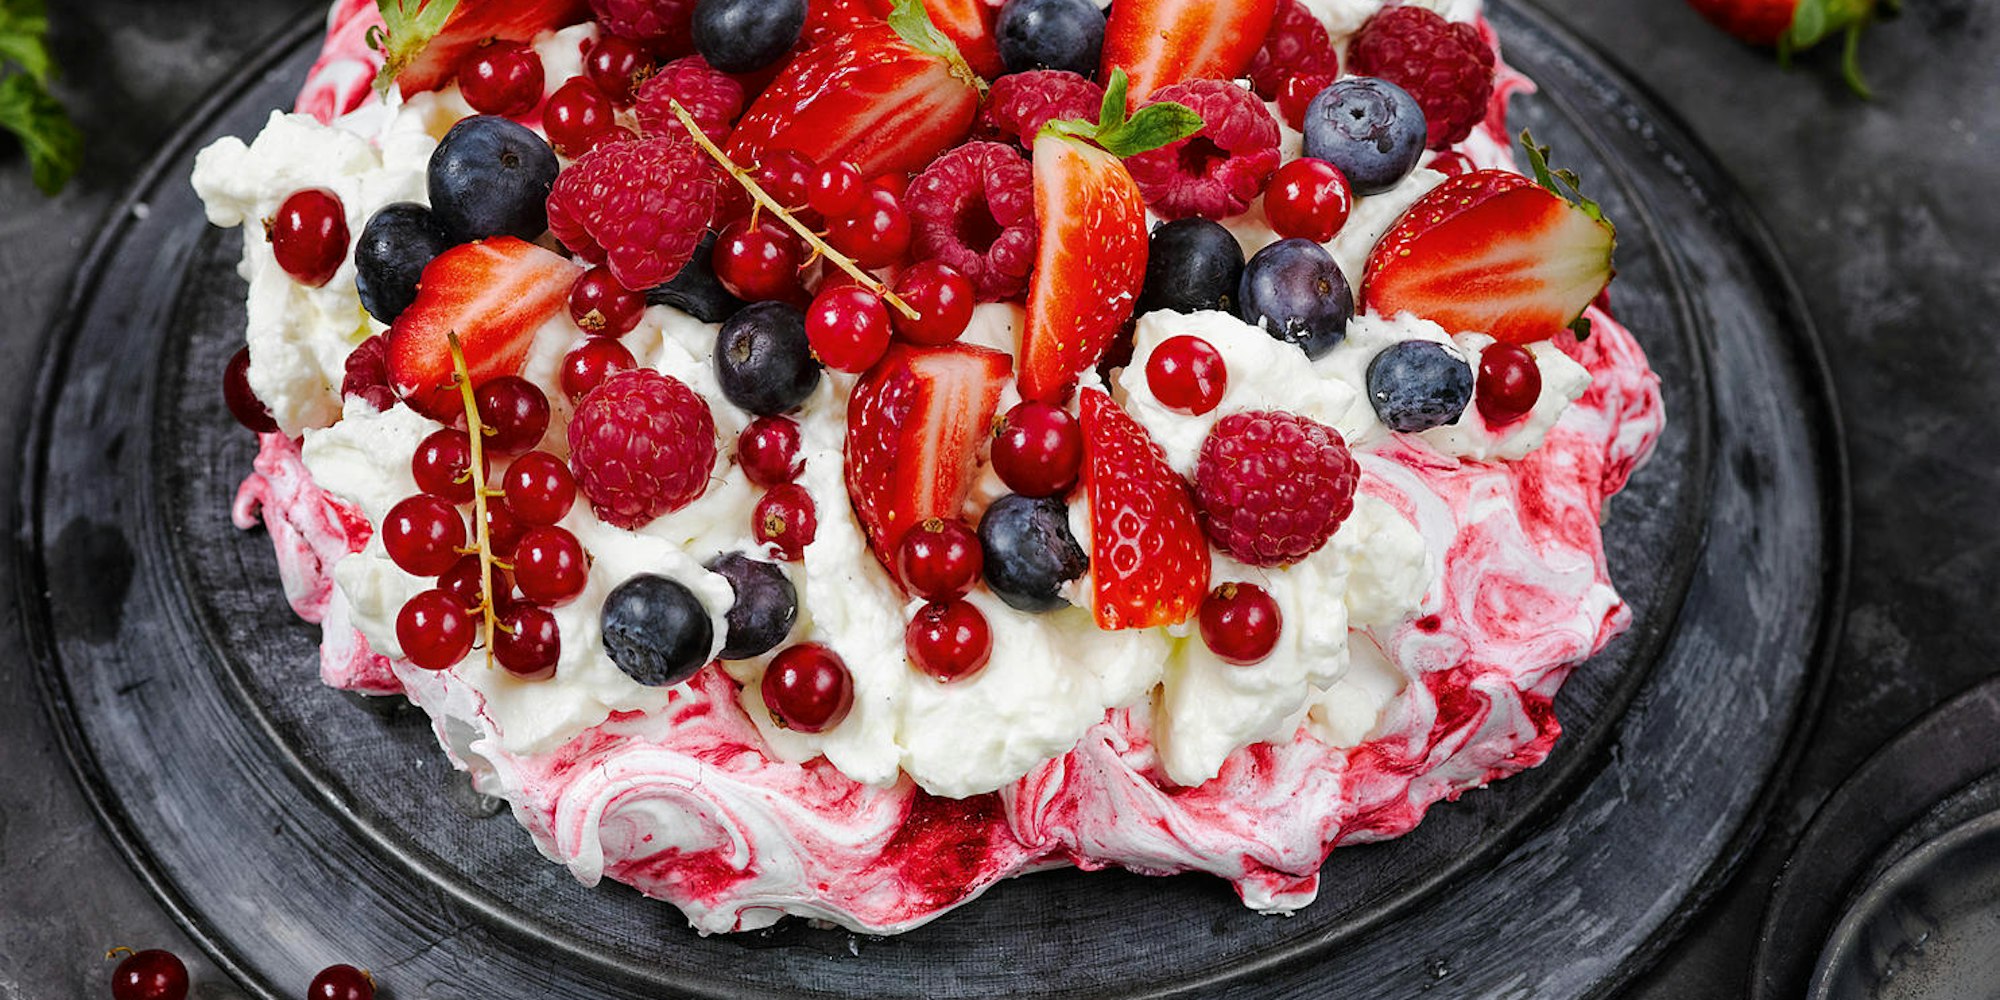 Pavlova-Torte mit Erdbeeren, Himbeeren, Johannisbeeren und Blaubeeren